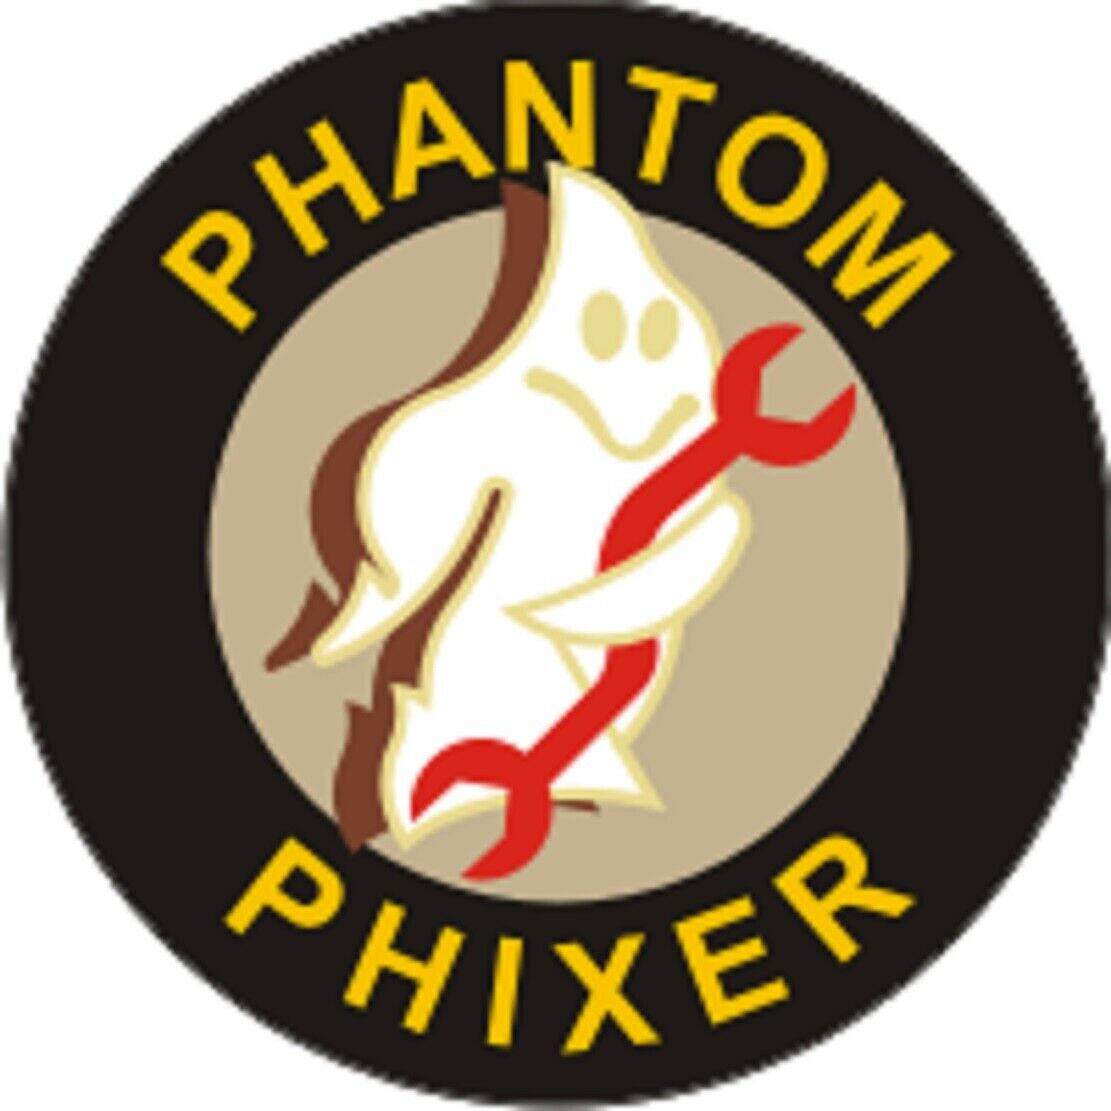 Official Usaf Phantom Phixer Decal 4" Wide X 4" High